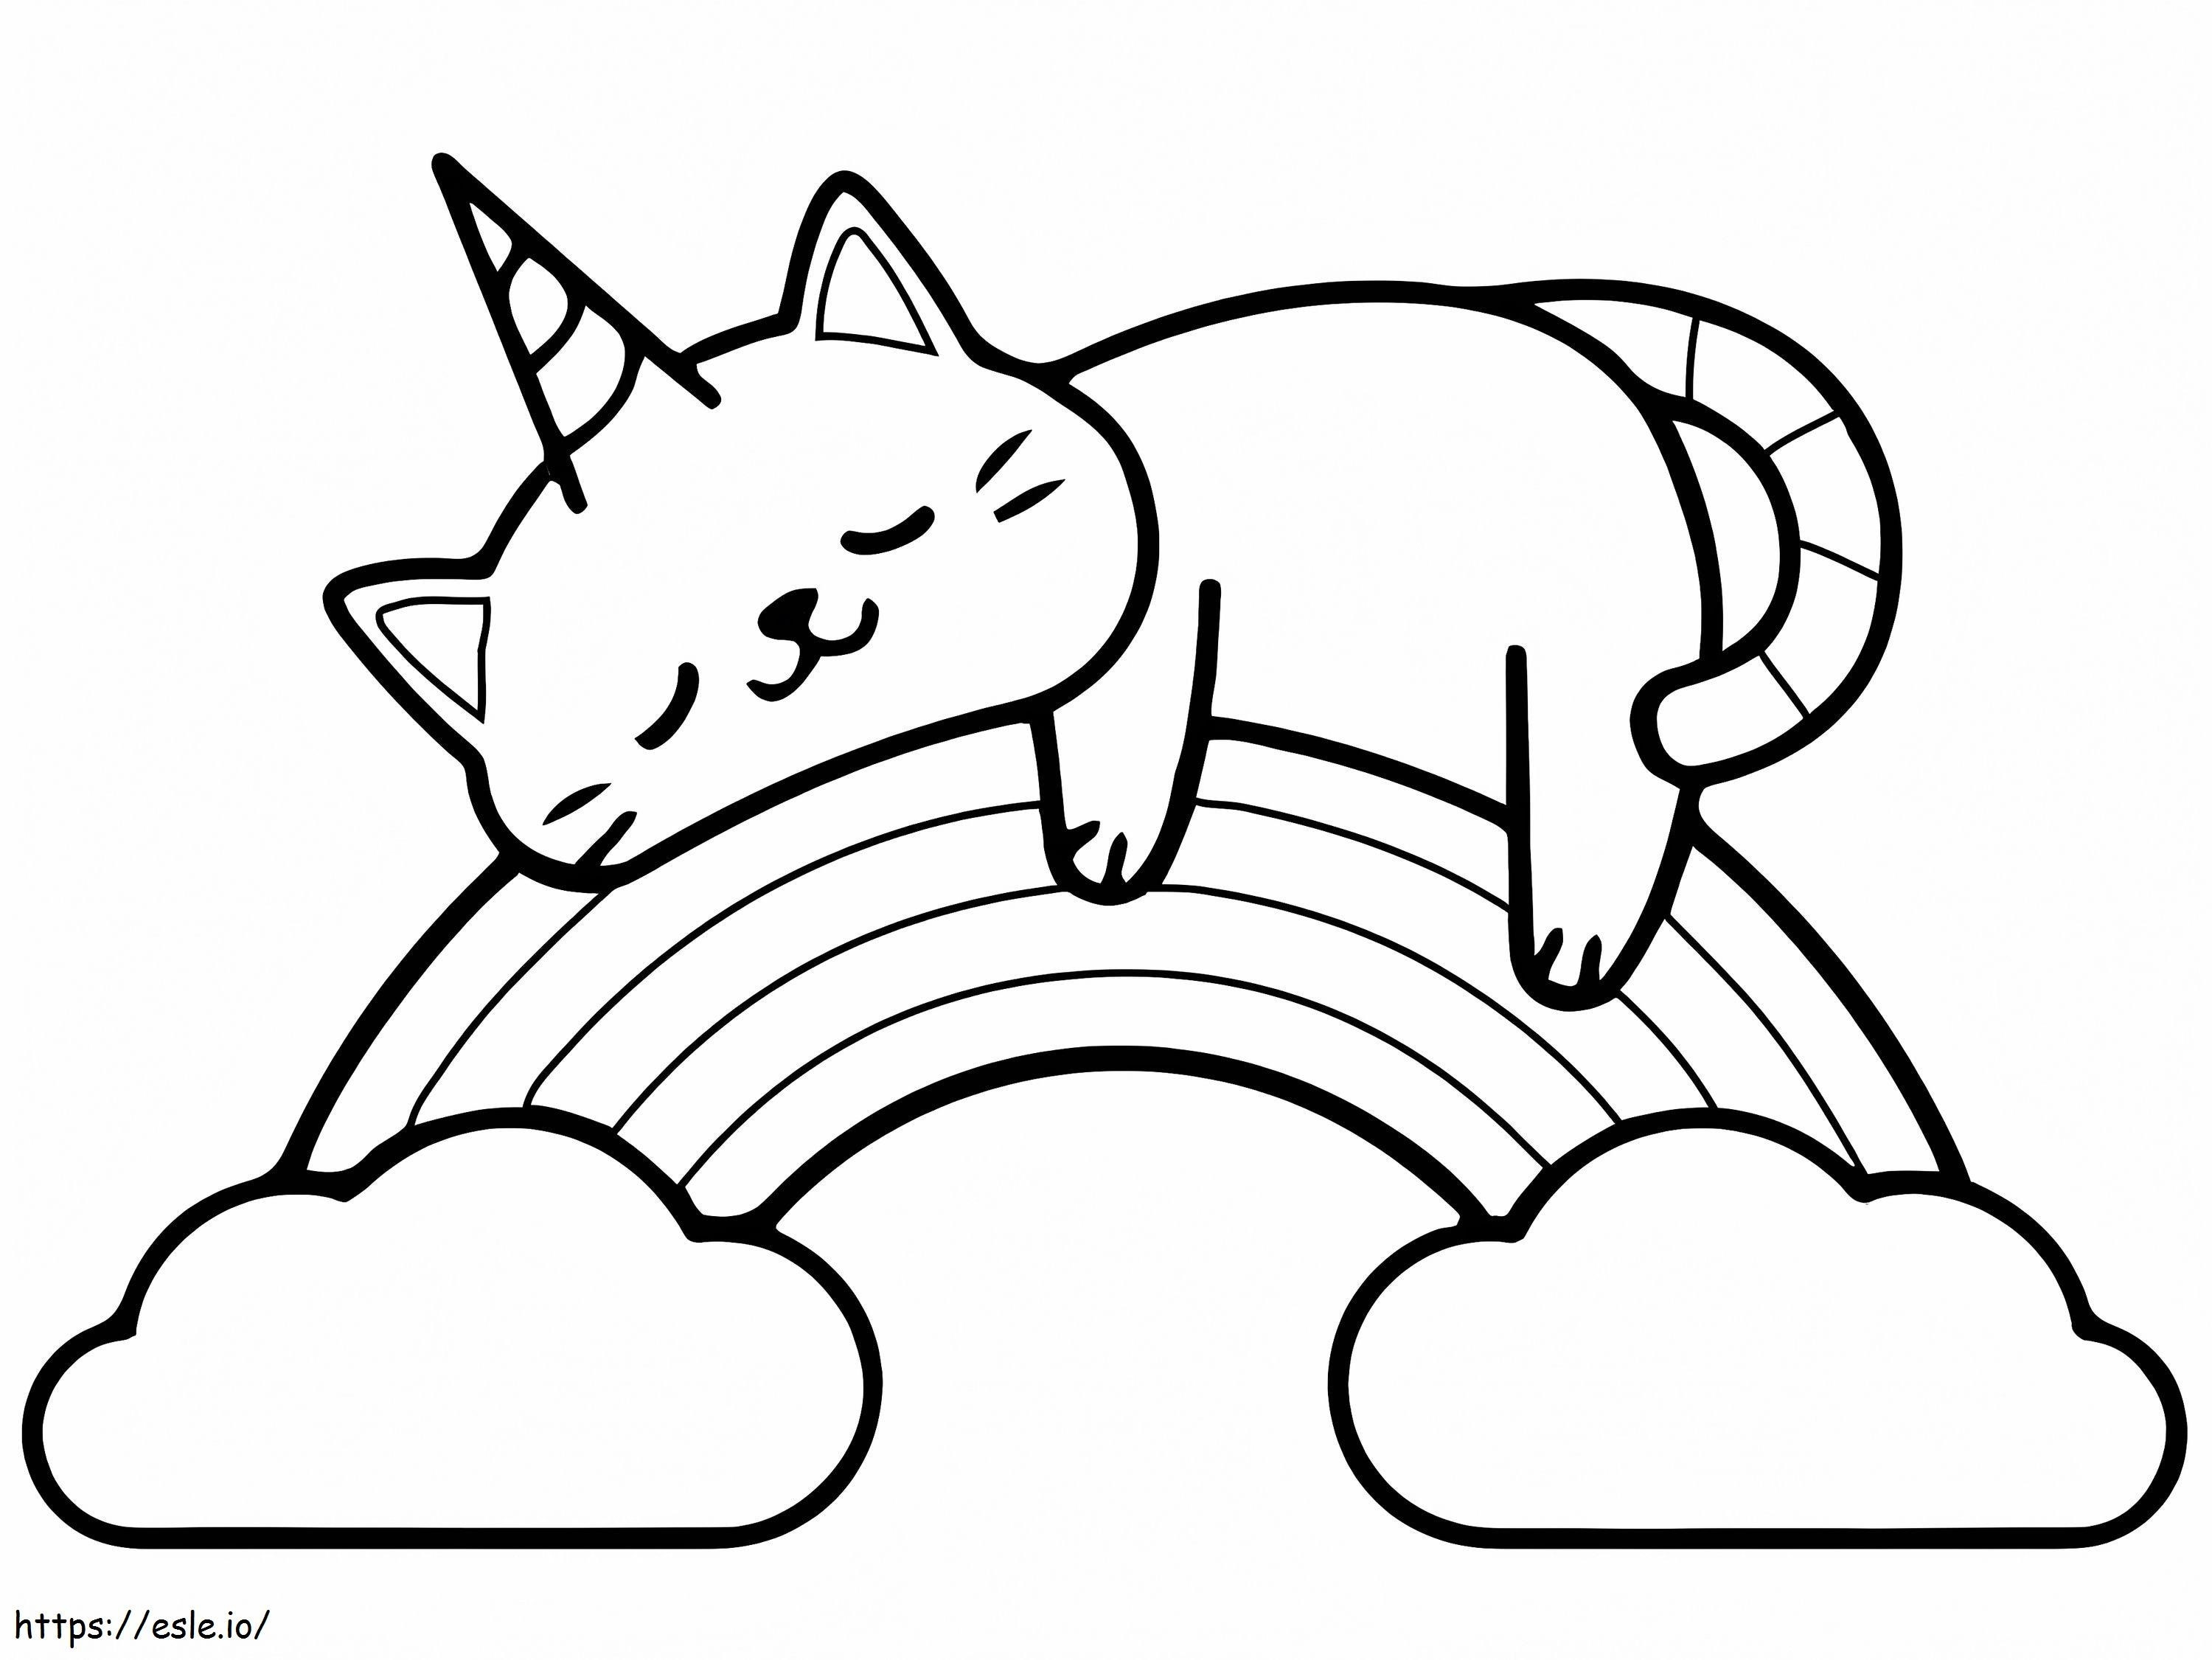 Coloriage Chat Licorne Sur Arc-en-ciel à imprimer dessin